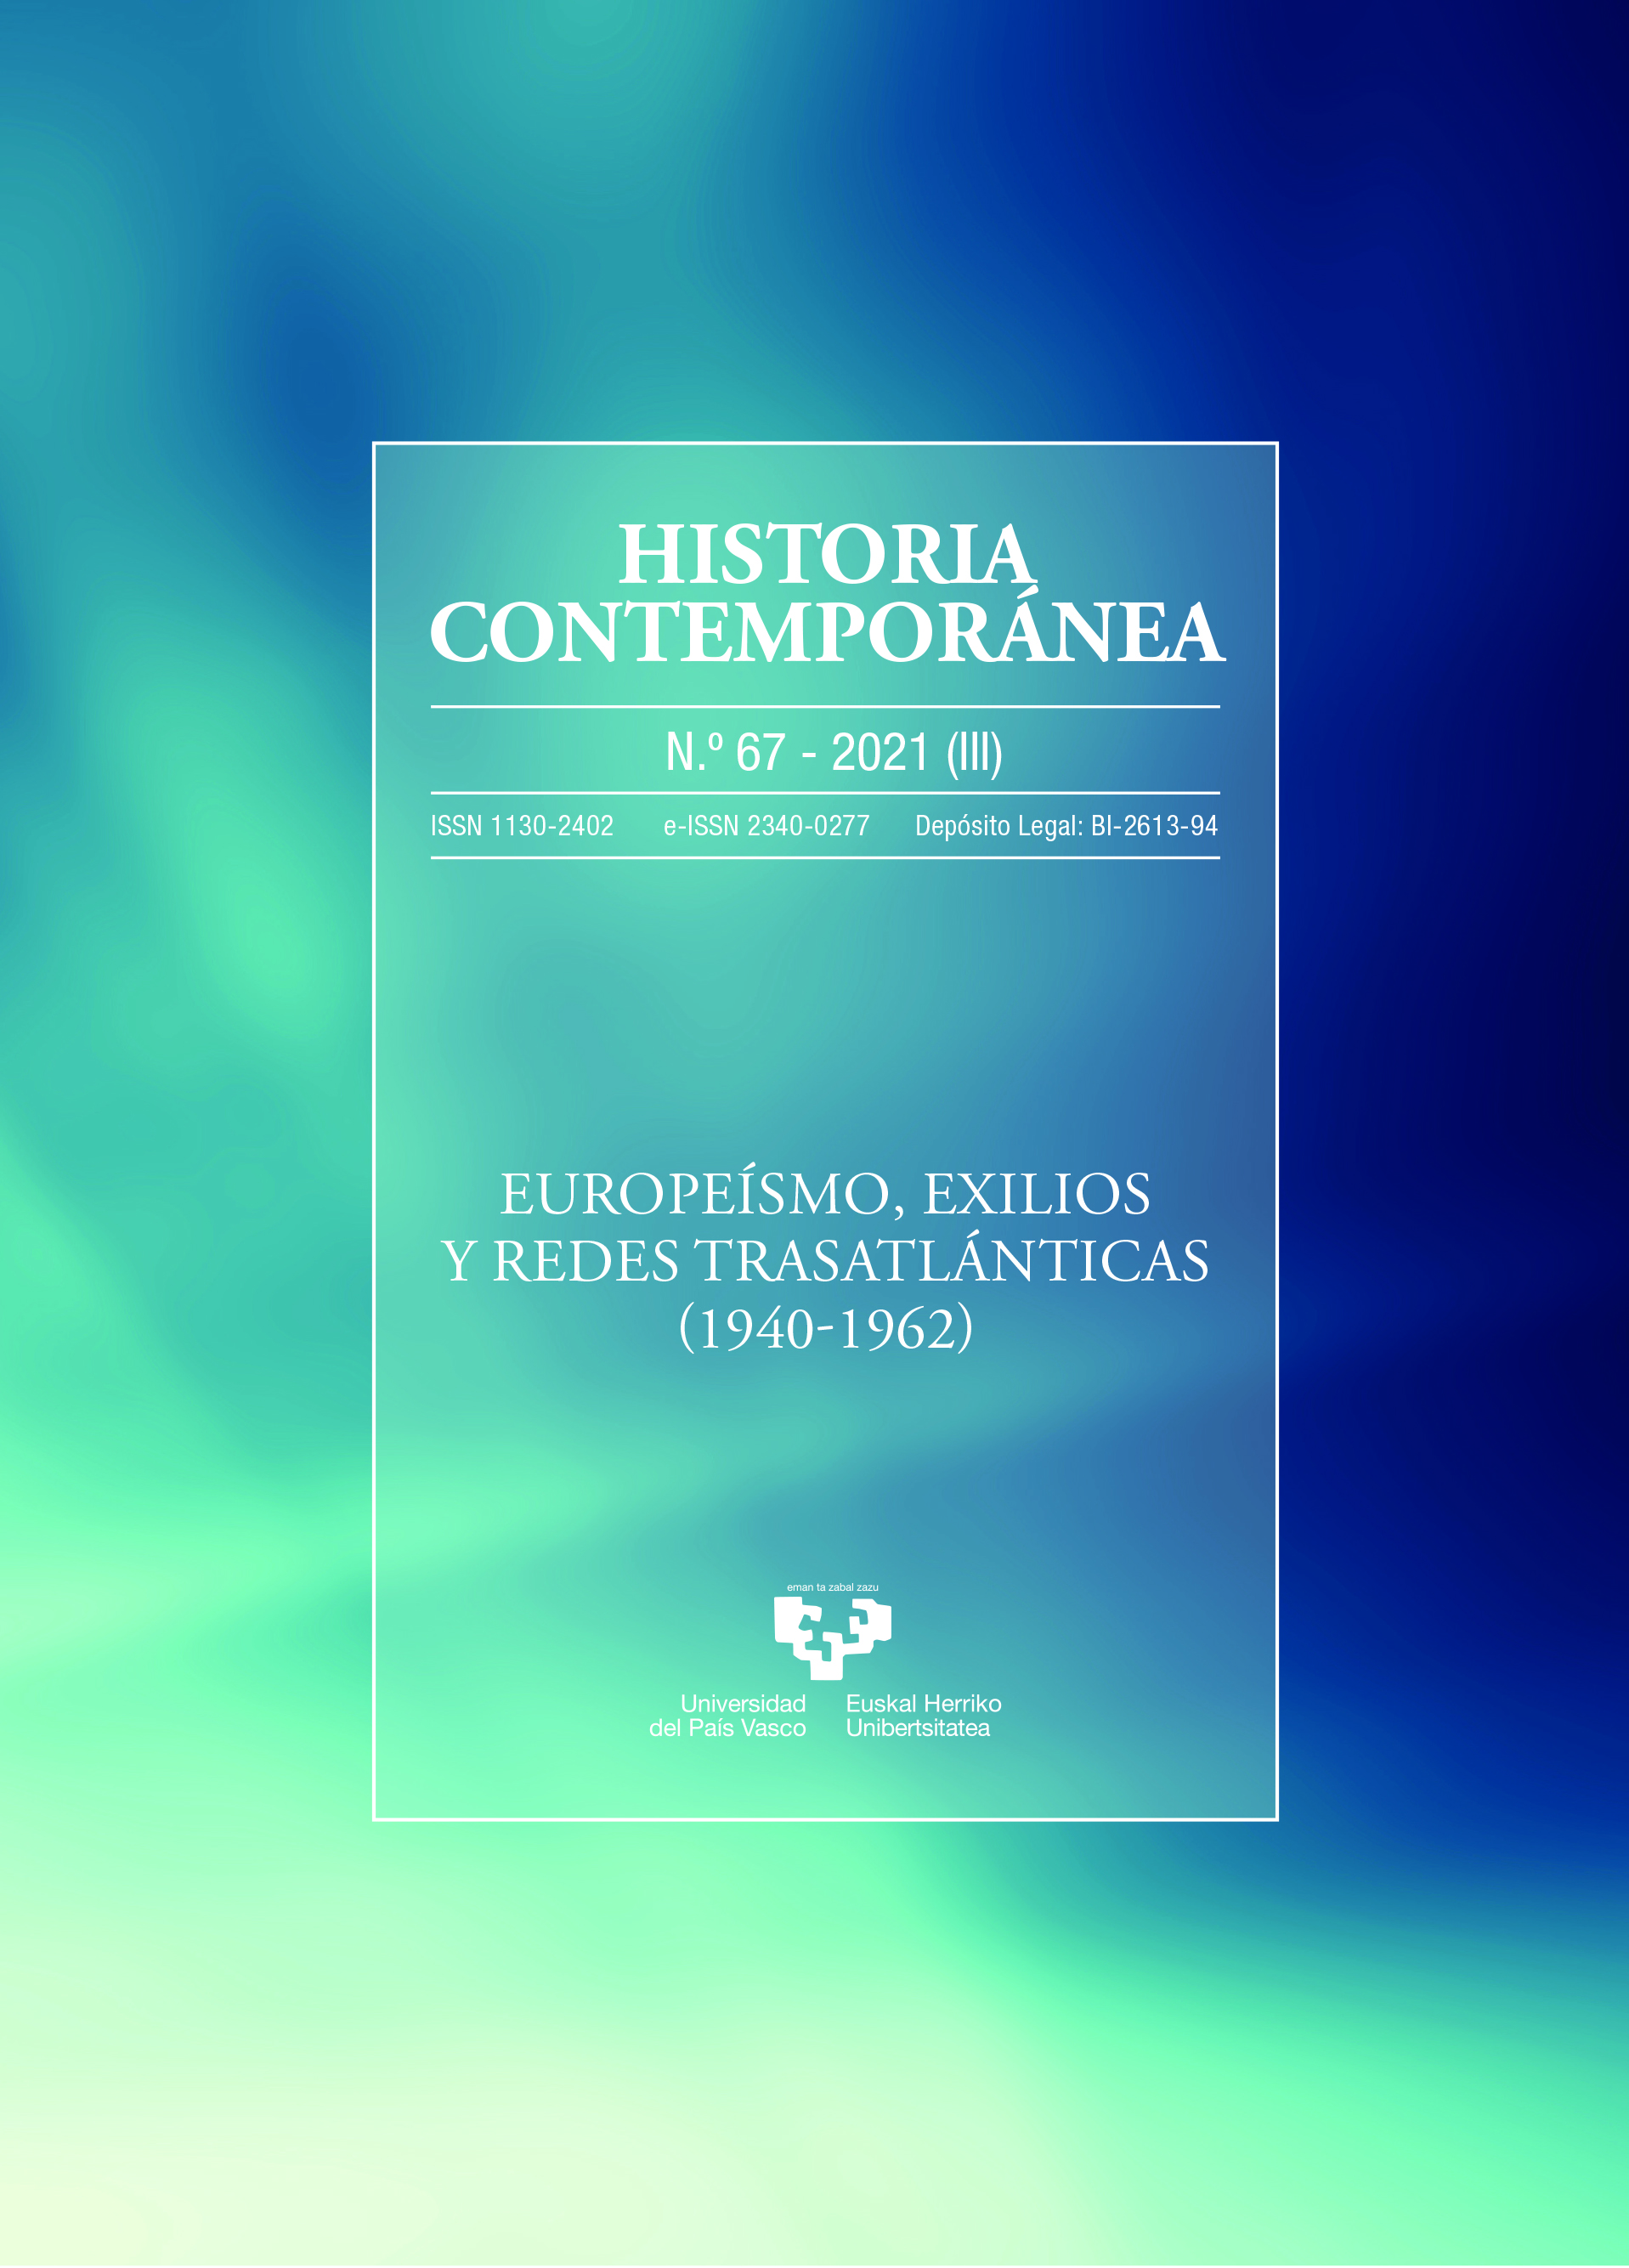 Europeísmo, exilios y redes transatlánticas (1940-1962). 101073565